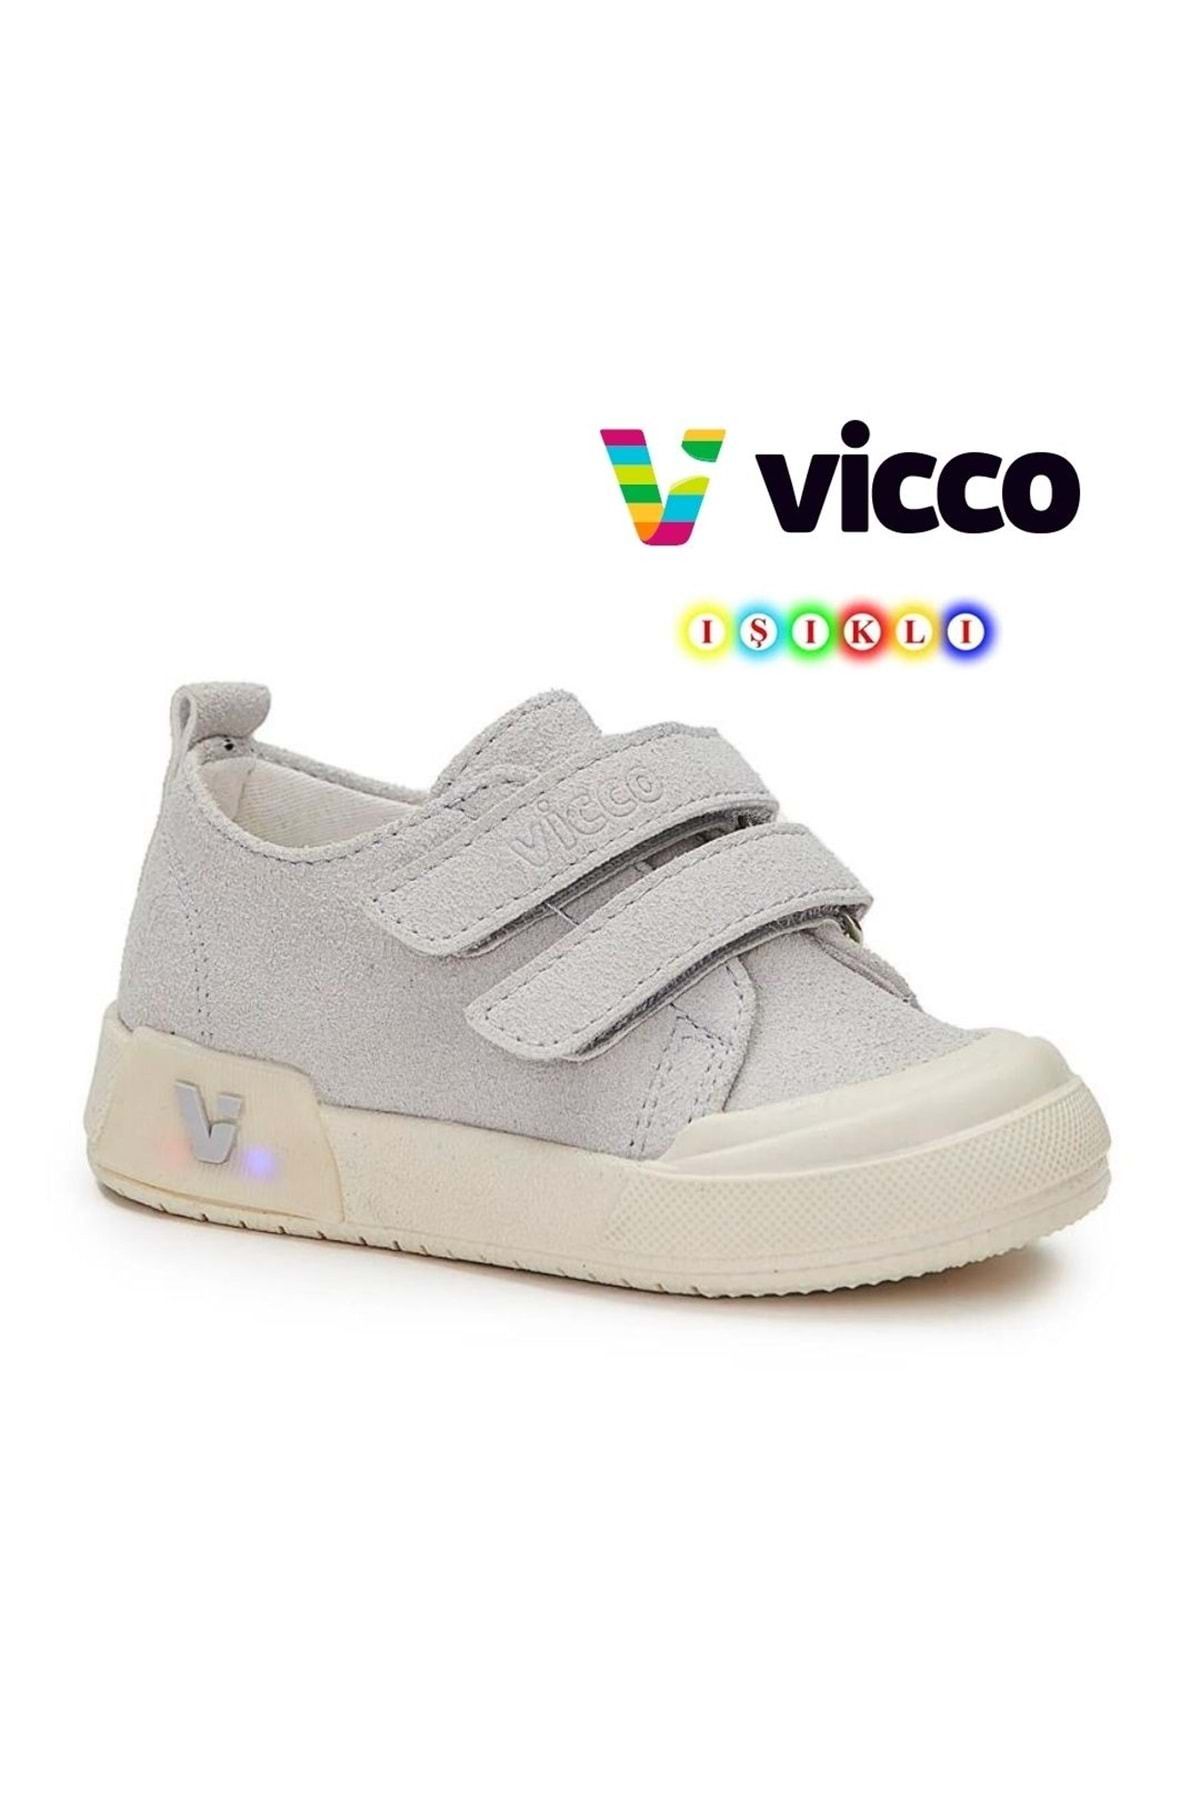 Vicco Mago Işıklı Keten Ortopedik Çocuk Spor Ayakkabı Gri